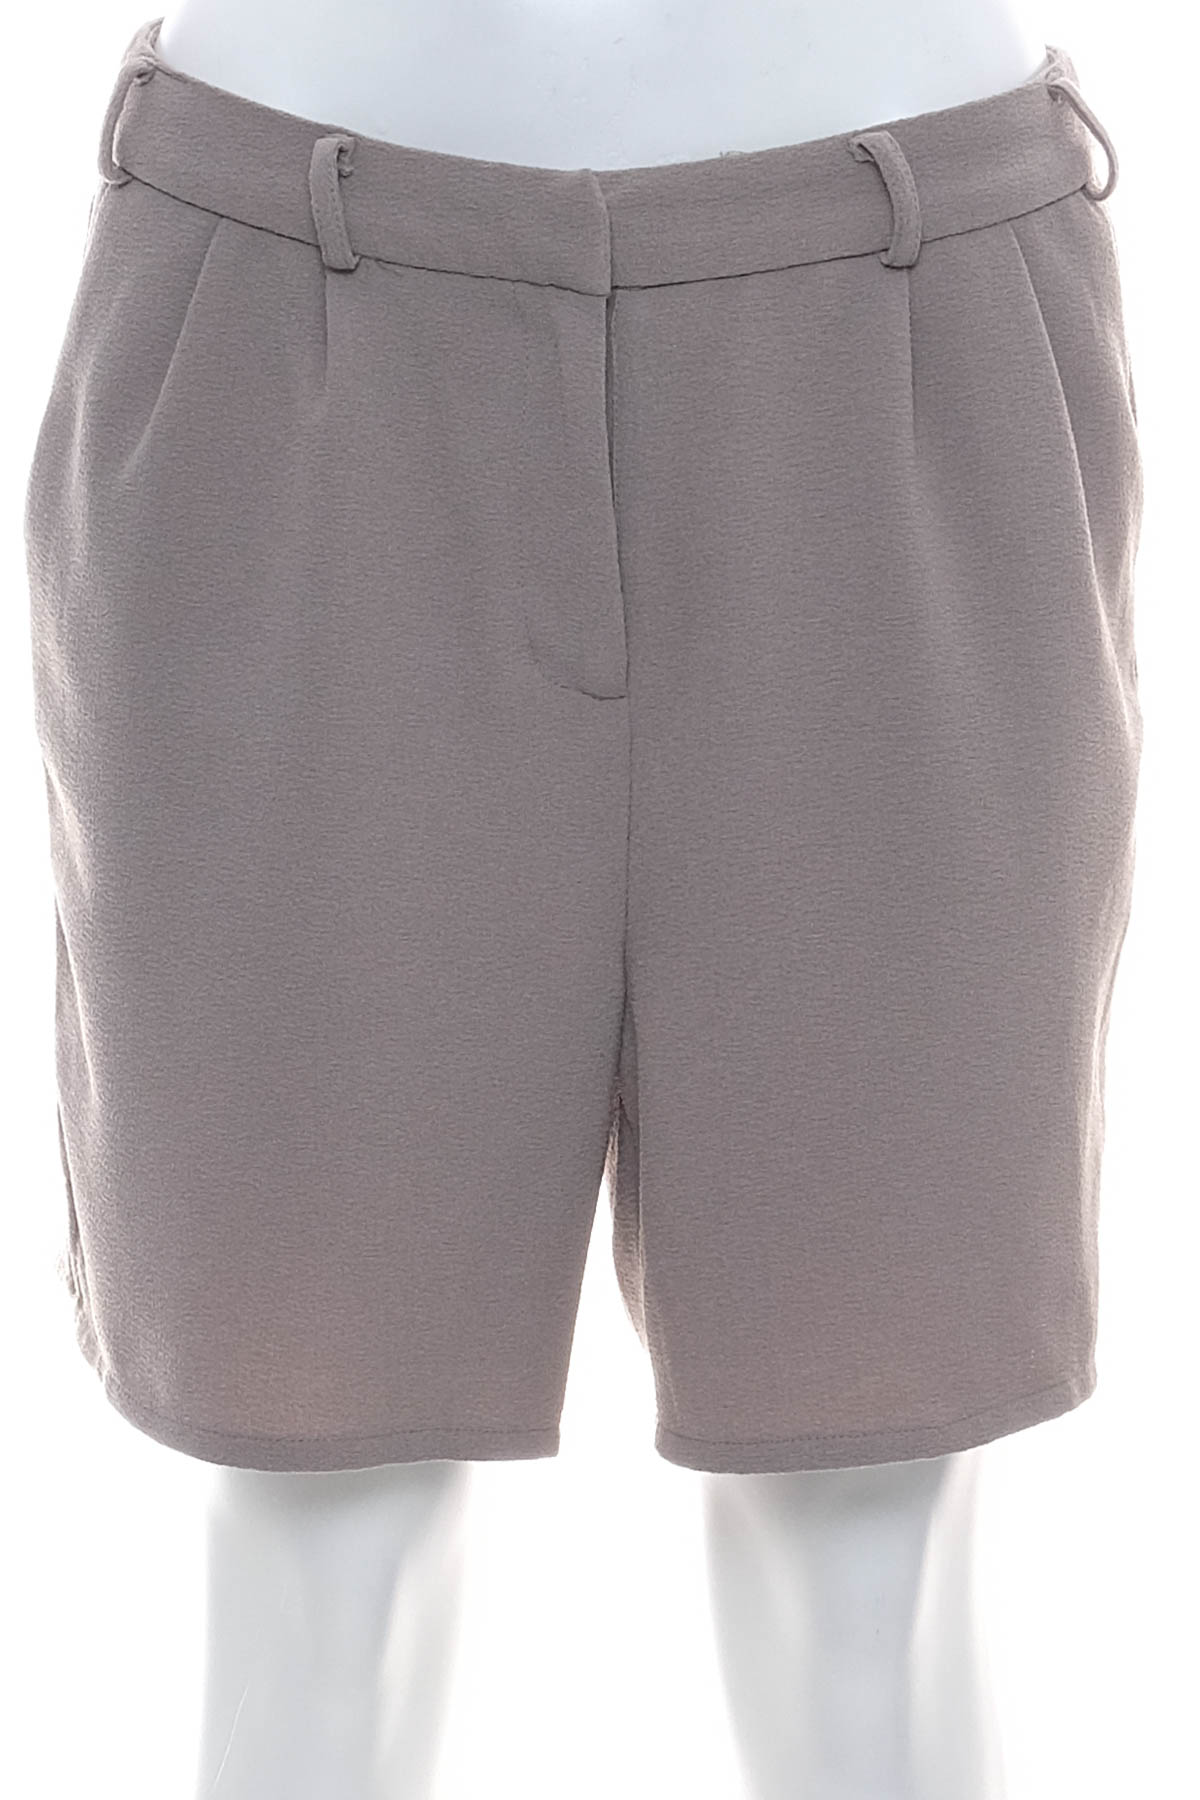 Female shorts - OBJECT - 0